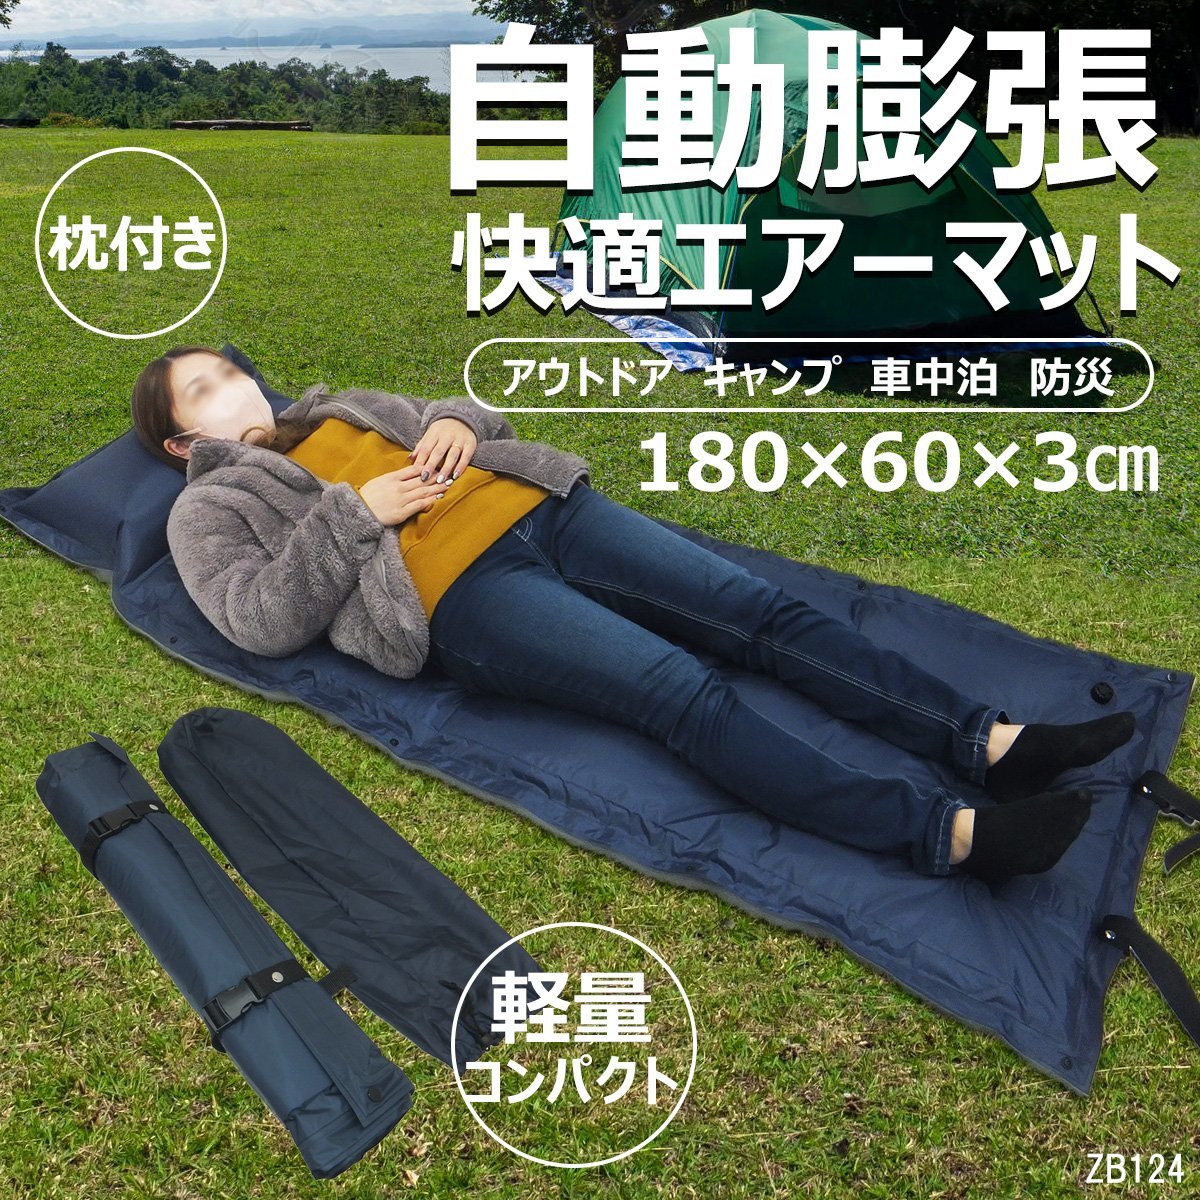  подушка имеется автоматика расширение воздушный коврик [2 шт. комплект ] воздушный матрац compact место хранения объединенный возможно /11К